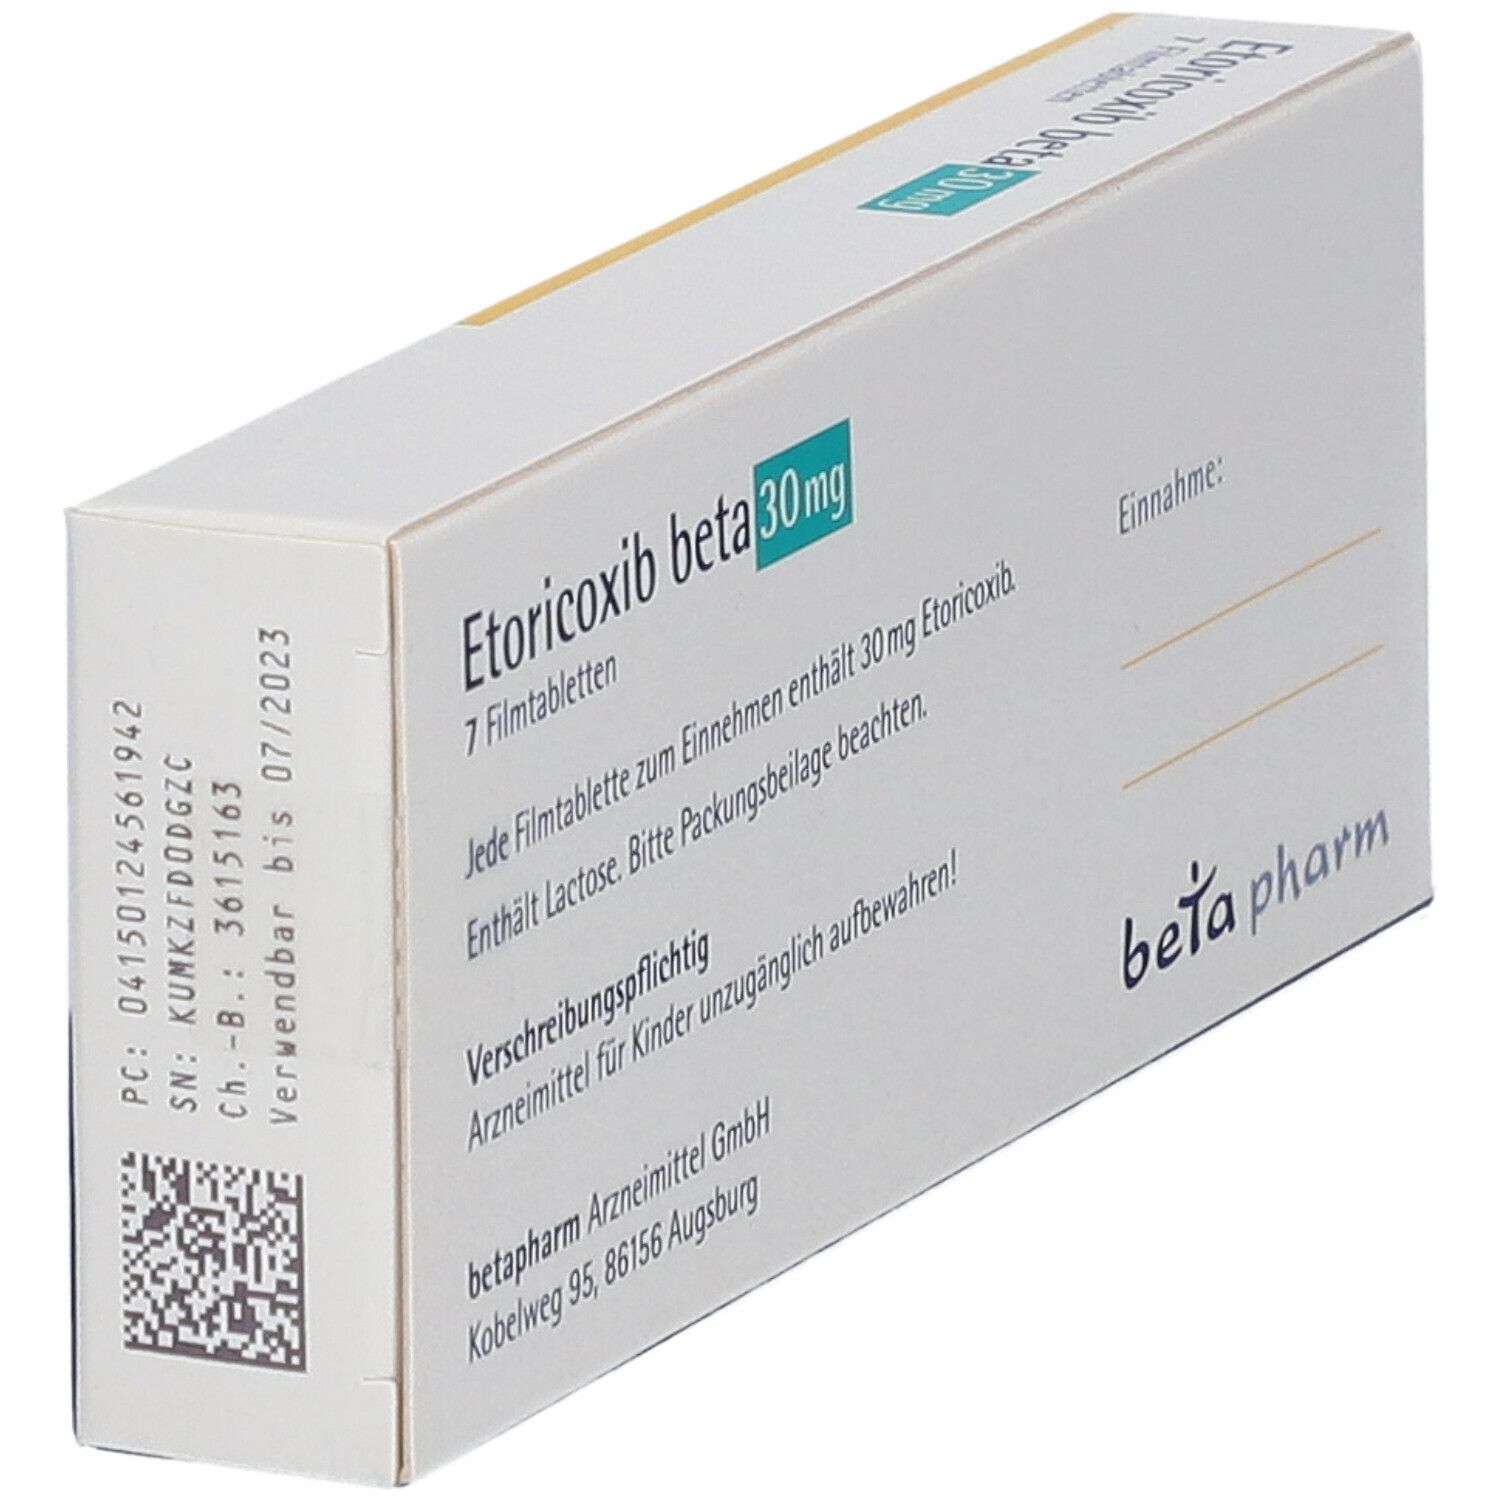 Etoricoxib beta 30 mg